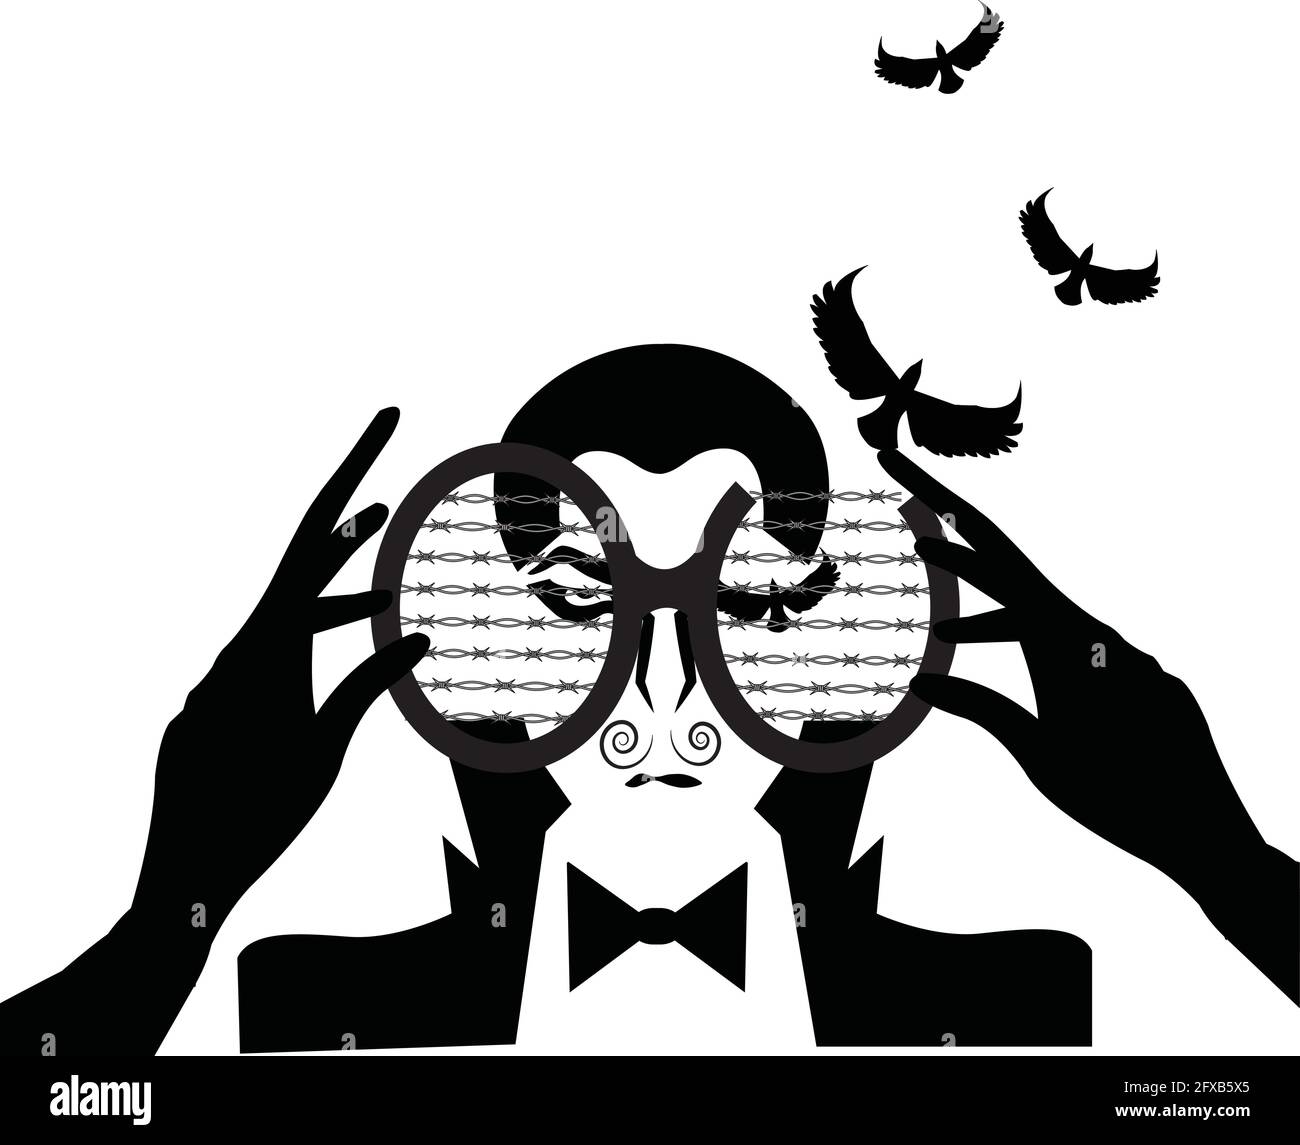 illustrazione di un uomo che guarda attraverso un binnacle e che ha occhi nella forma di uccelli che stanno decollo, isolato su bianco Illustrazione Vettoriale